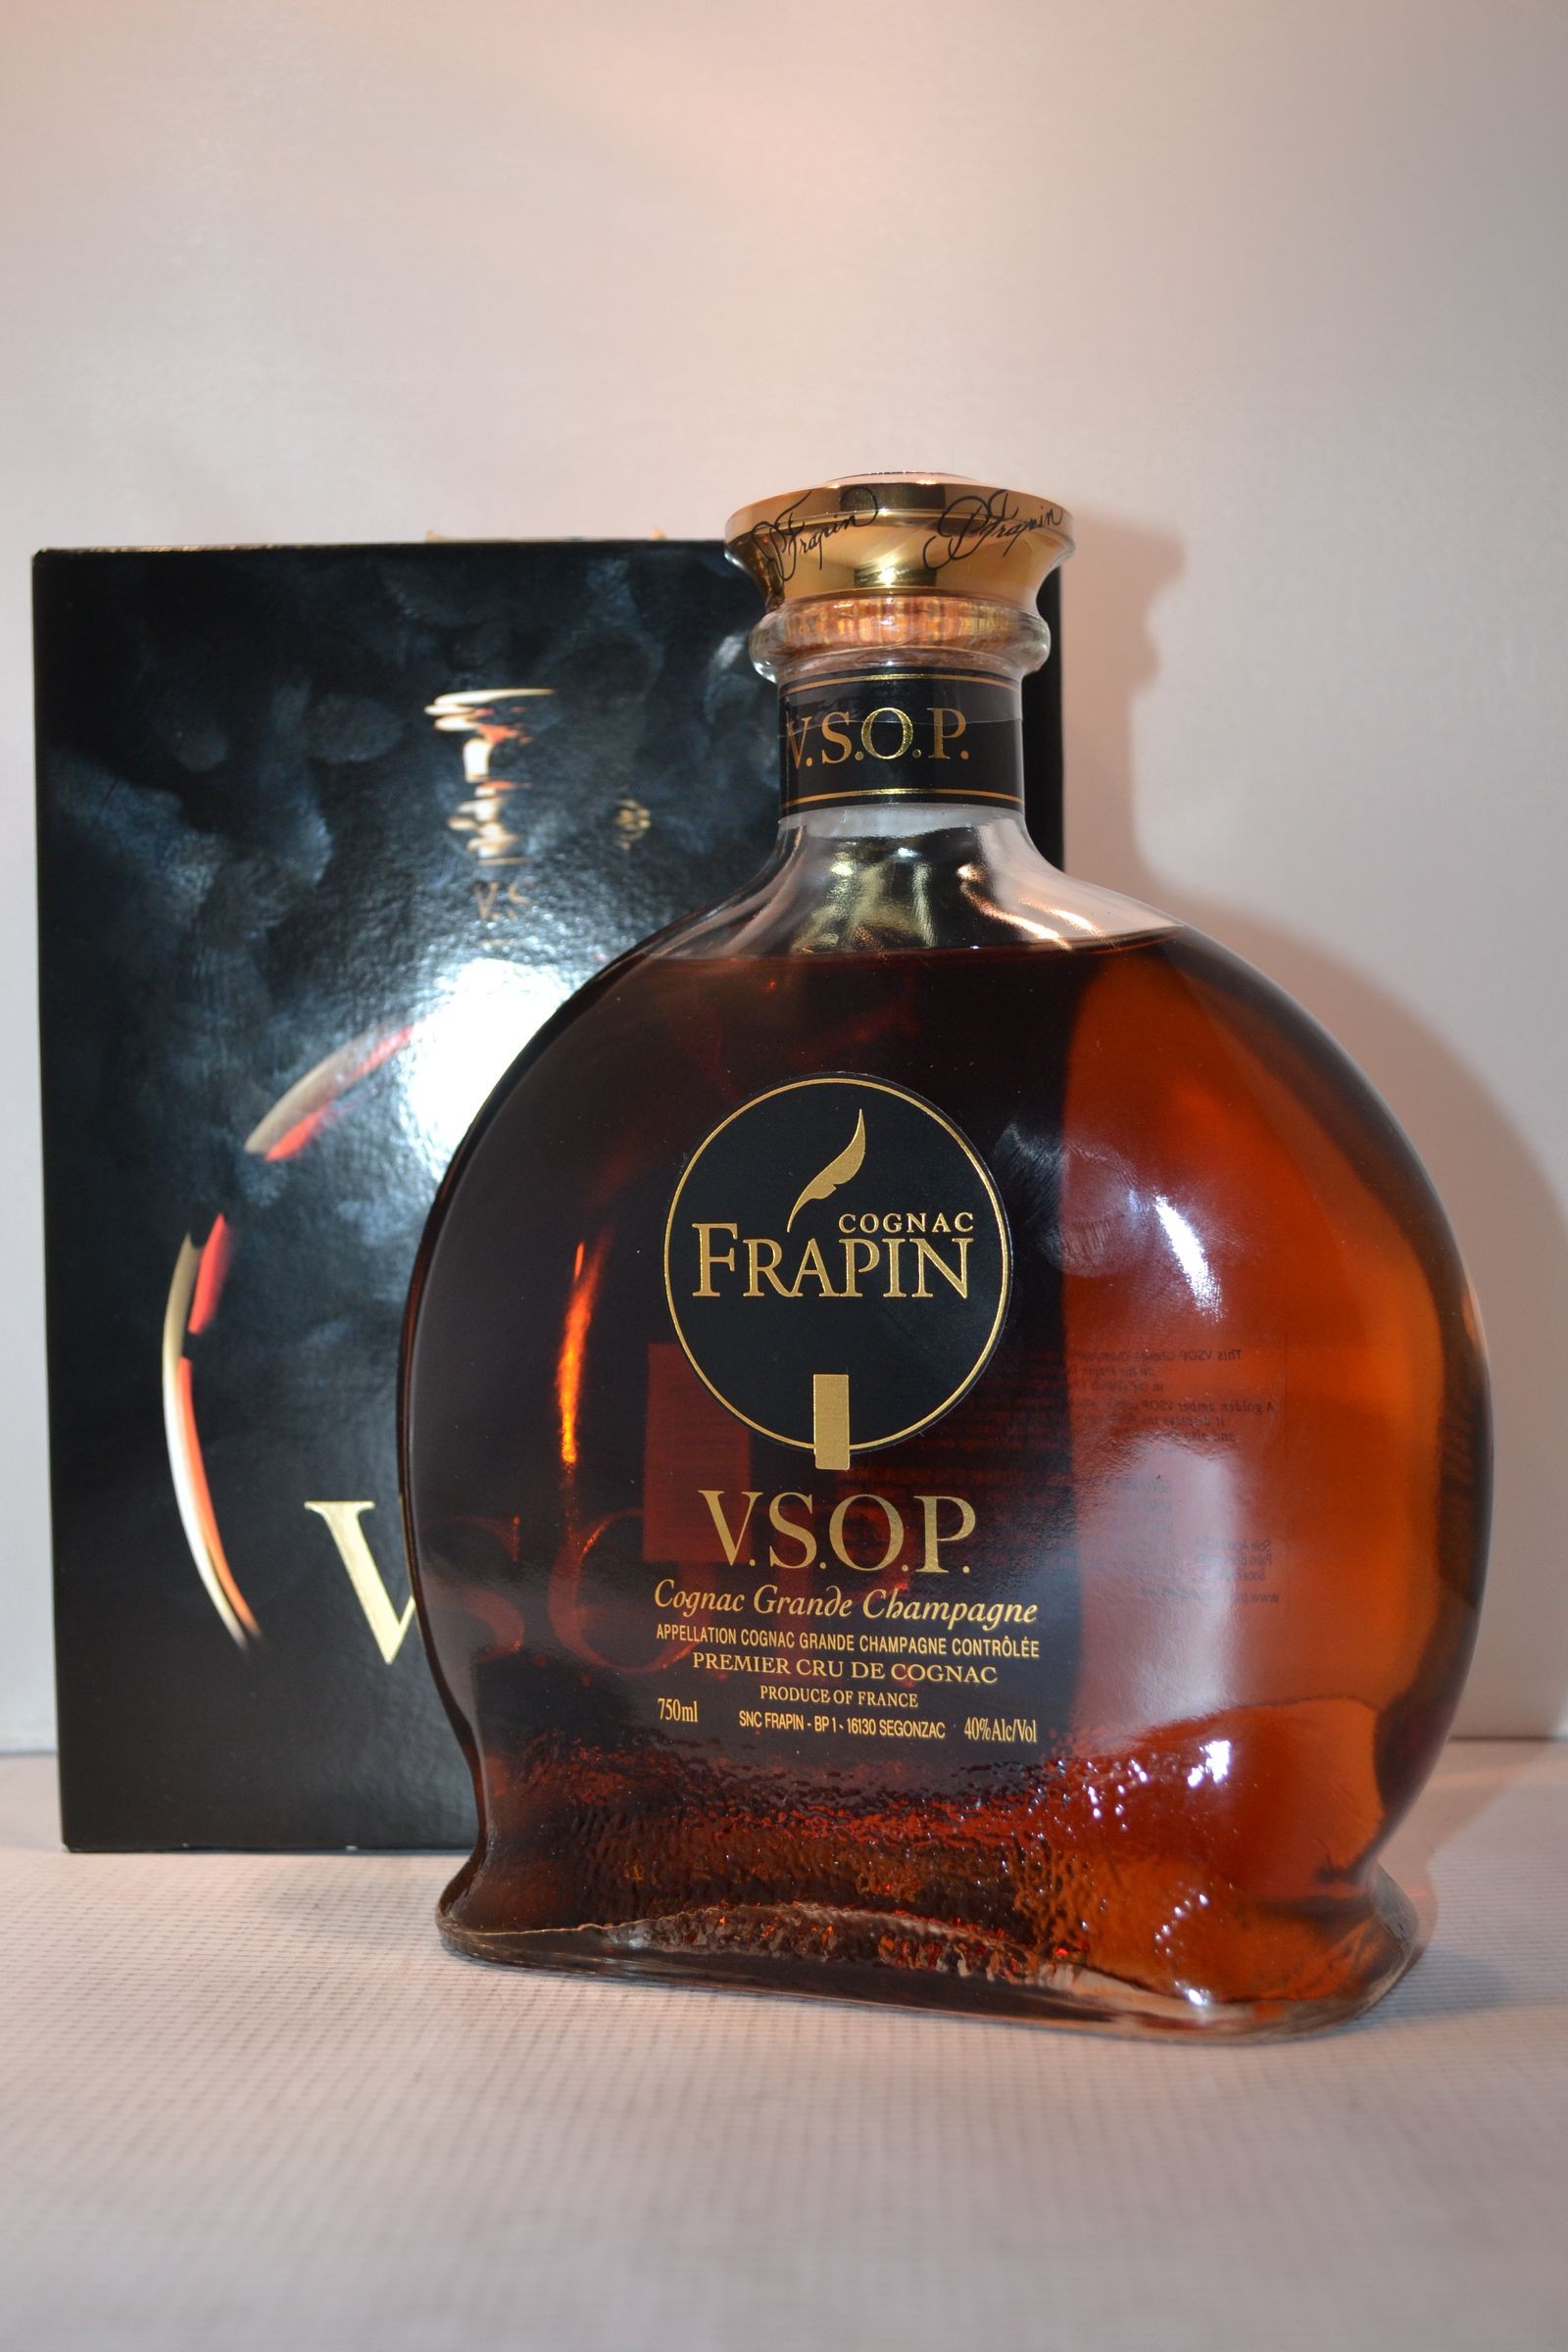 Frapin 0.7. Frapin Cognac коньяк. Коньяк Фрапэн ВСОП. Frapin VSOP 2013. Коньяк Frapin VSOP.